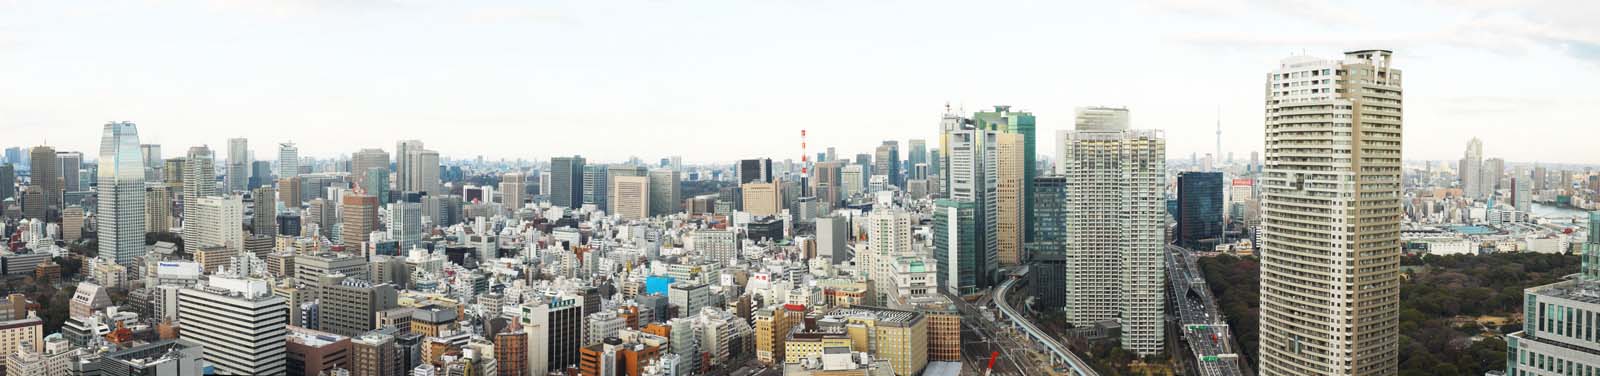 fotografia, material, livra, ajardine, imagine, proveja fotografia,Panorama de Tquio, construindo, A rea de centro da cidade, Shiodome, Toranomon